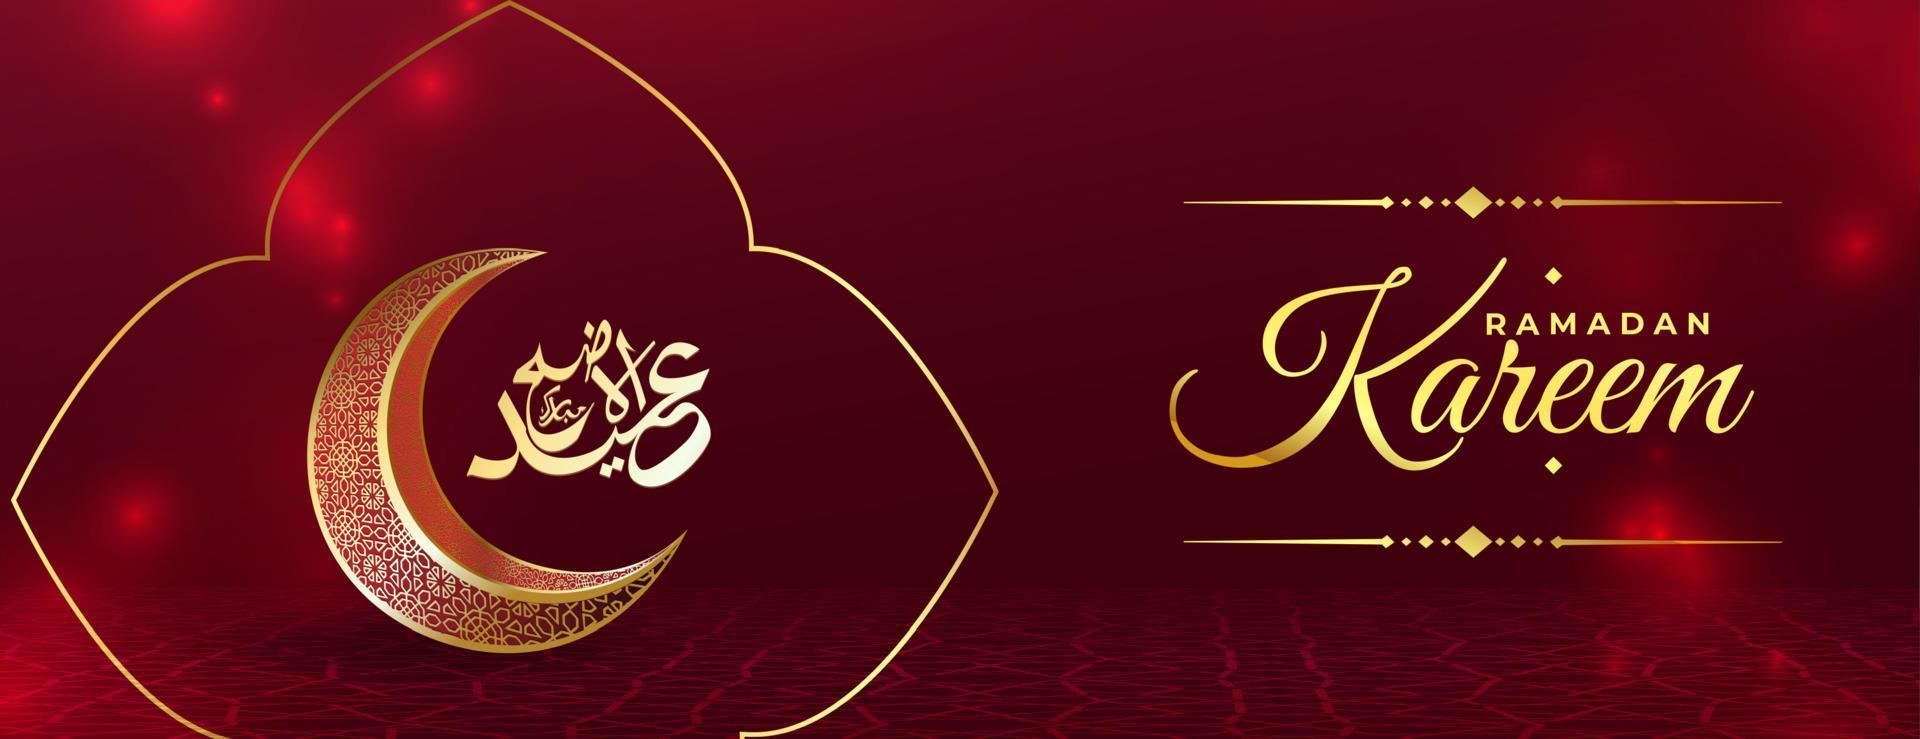 plantilla de diseño de fondo dorado ramadan kareem rojo brillante vector